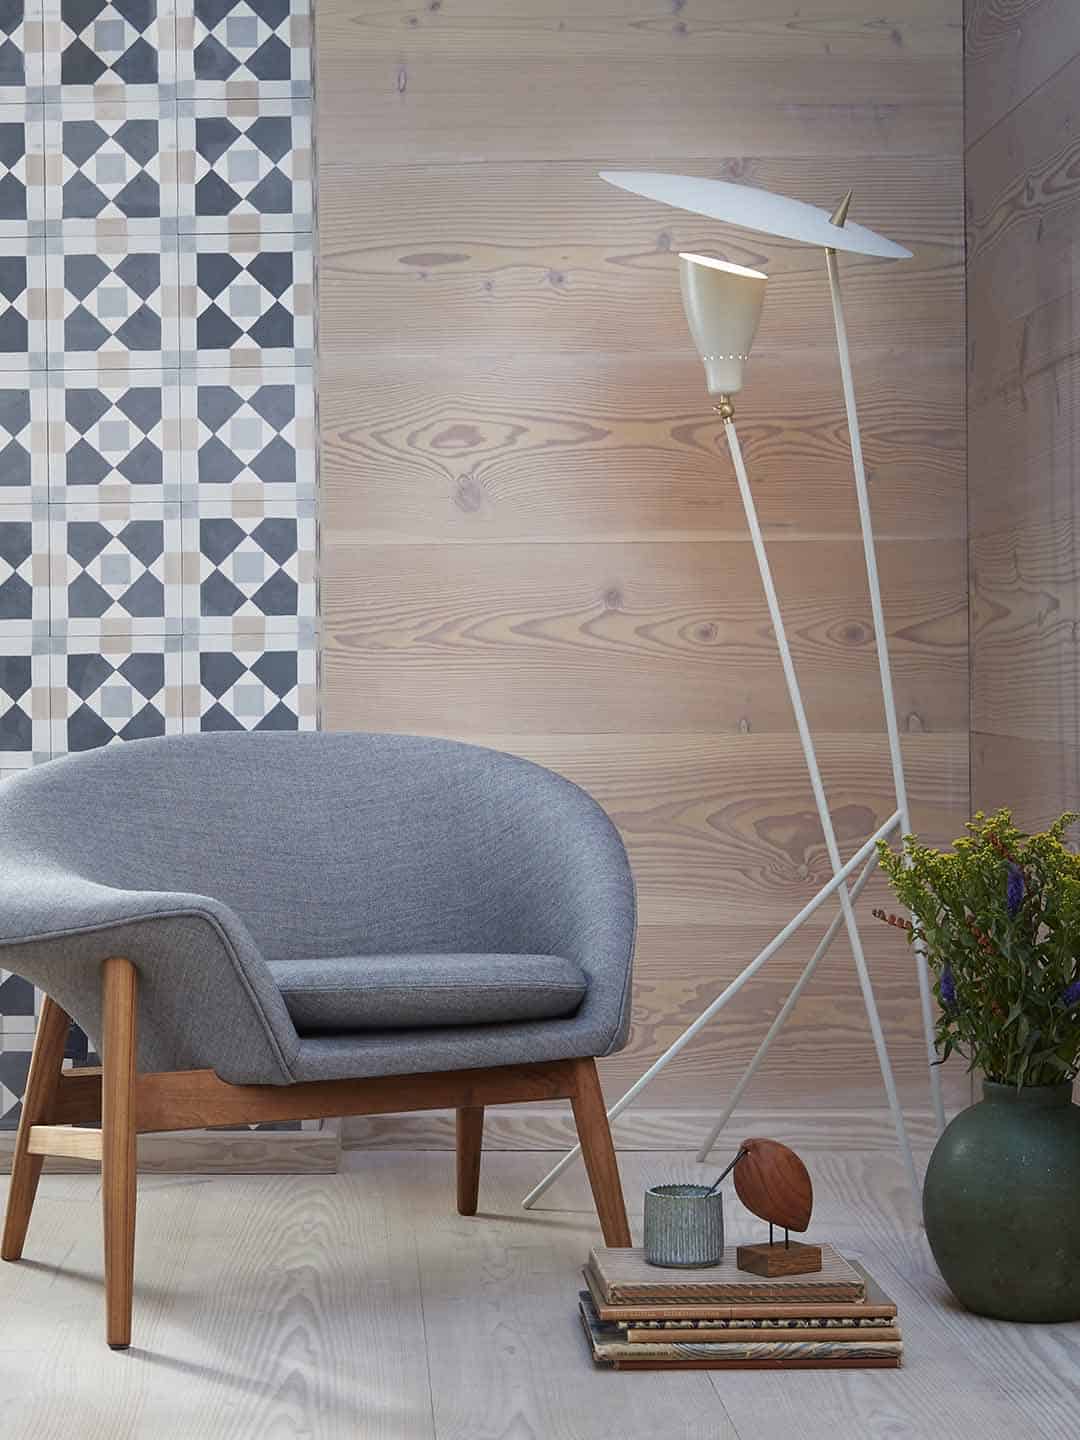 Торшер Warm Nordic Silhouette теплого белого цвета в гостиной